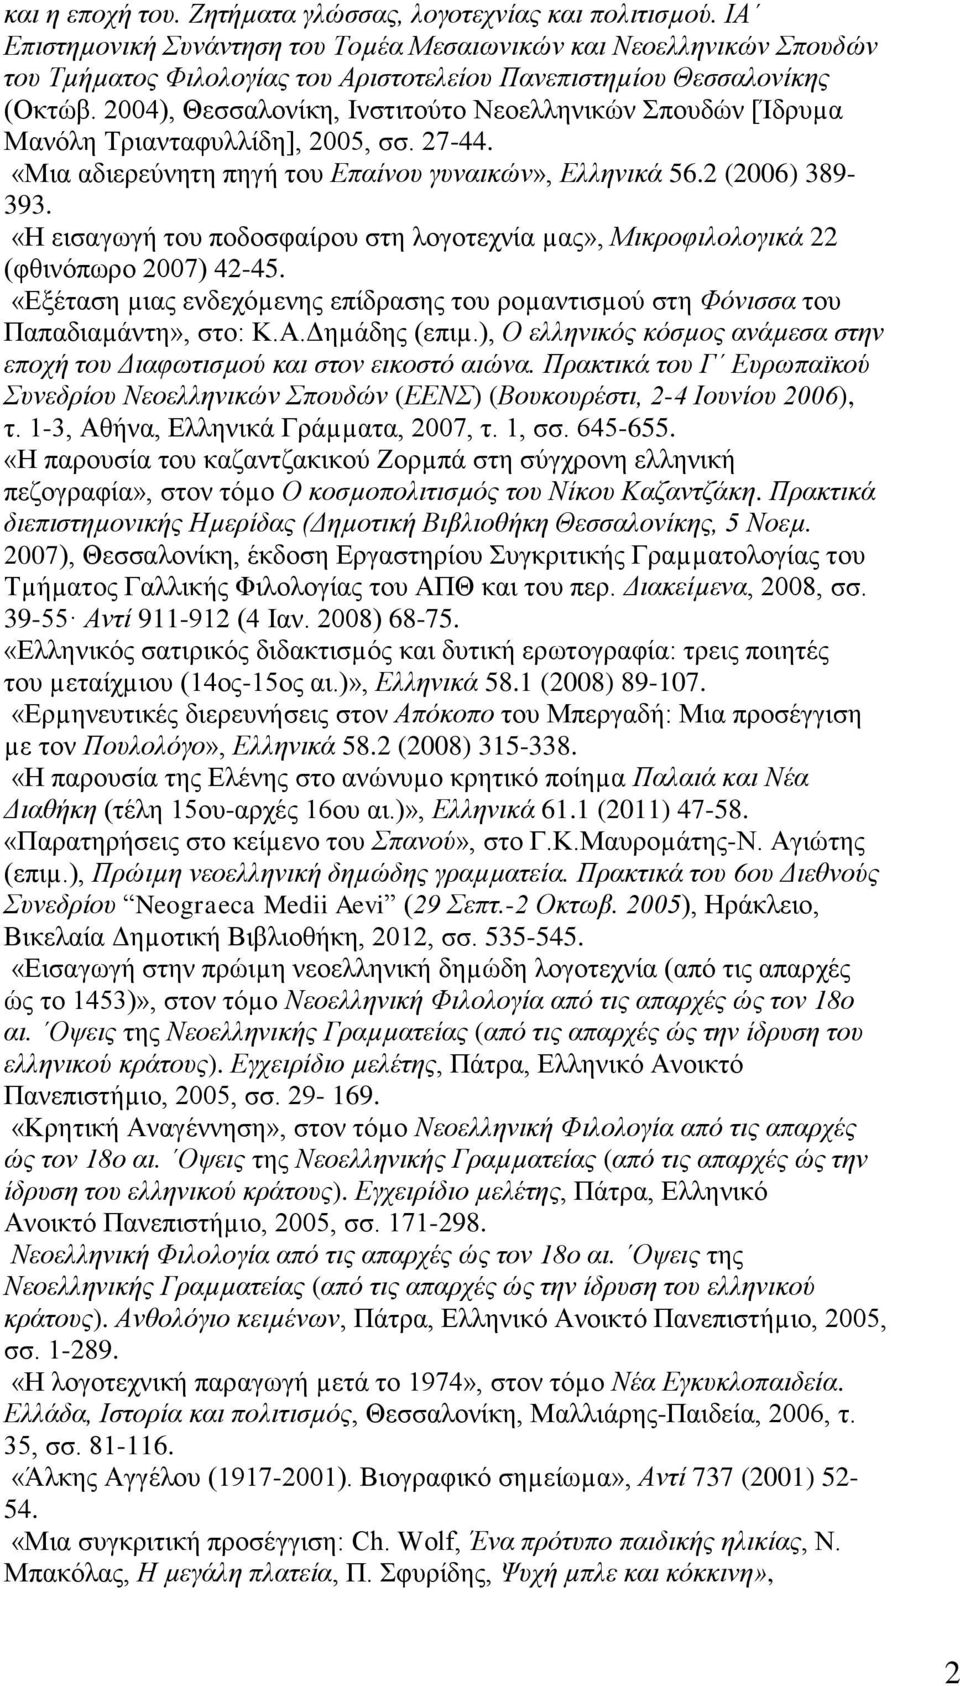 2004), Θεσσαλονίκη, Ινστιτούτο Νεοελληνικών Σπουδών [Ίδρυµα Μανόλη Τριανταφυλλίδη], 2005, σσ. 27-44. «Μια αδιερεύνητη πηγή του Επαίνου γυναικών», Ελληνικά 56.2 (2006) 389-393.